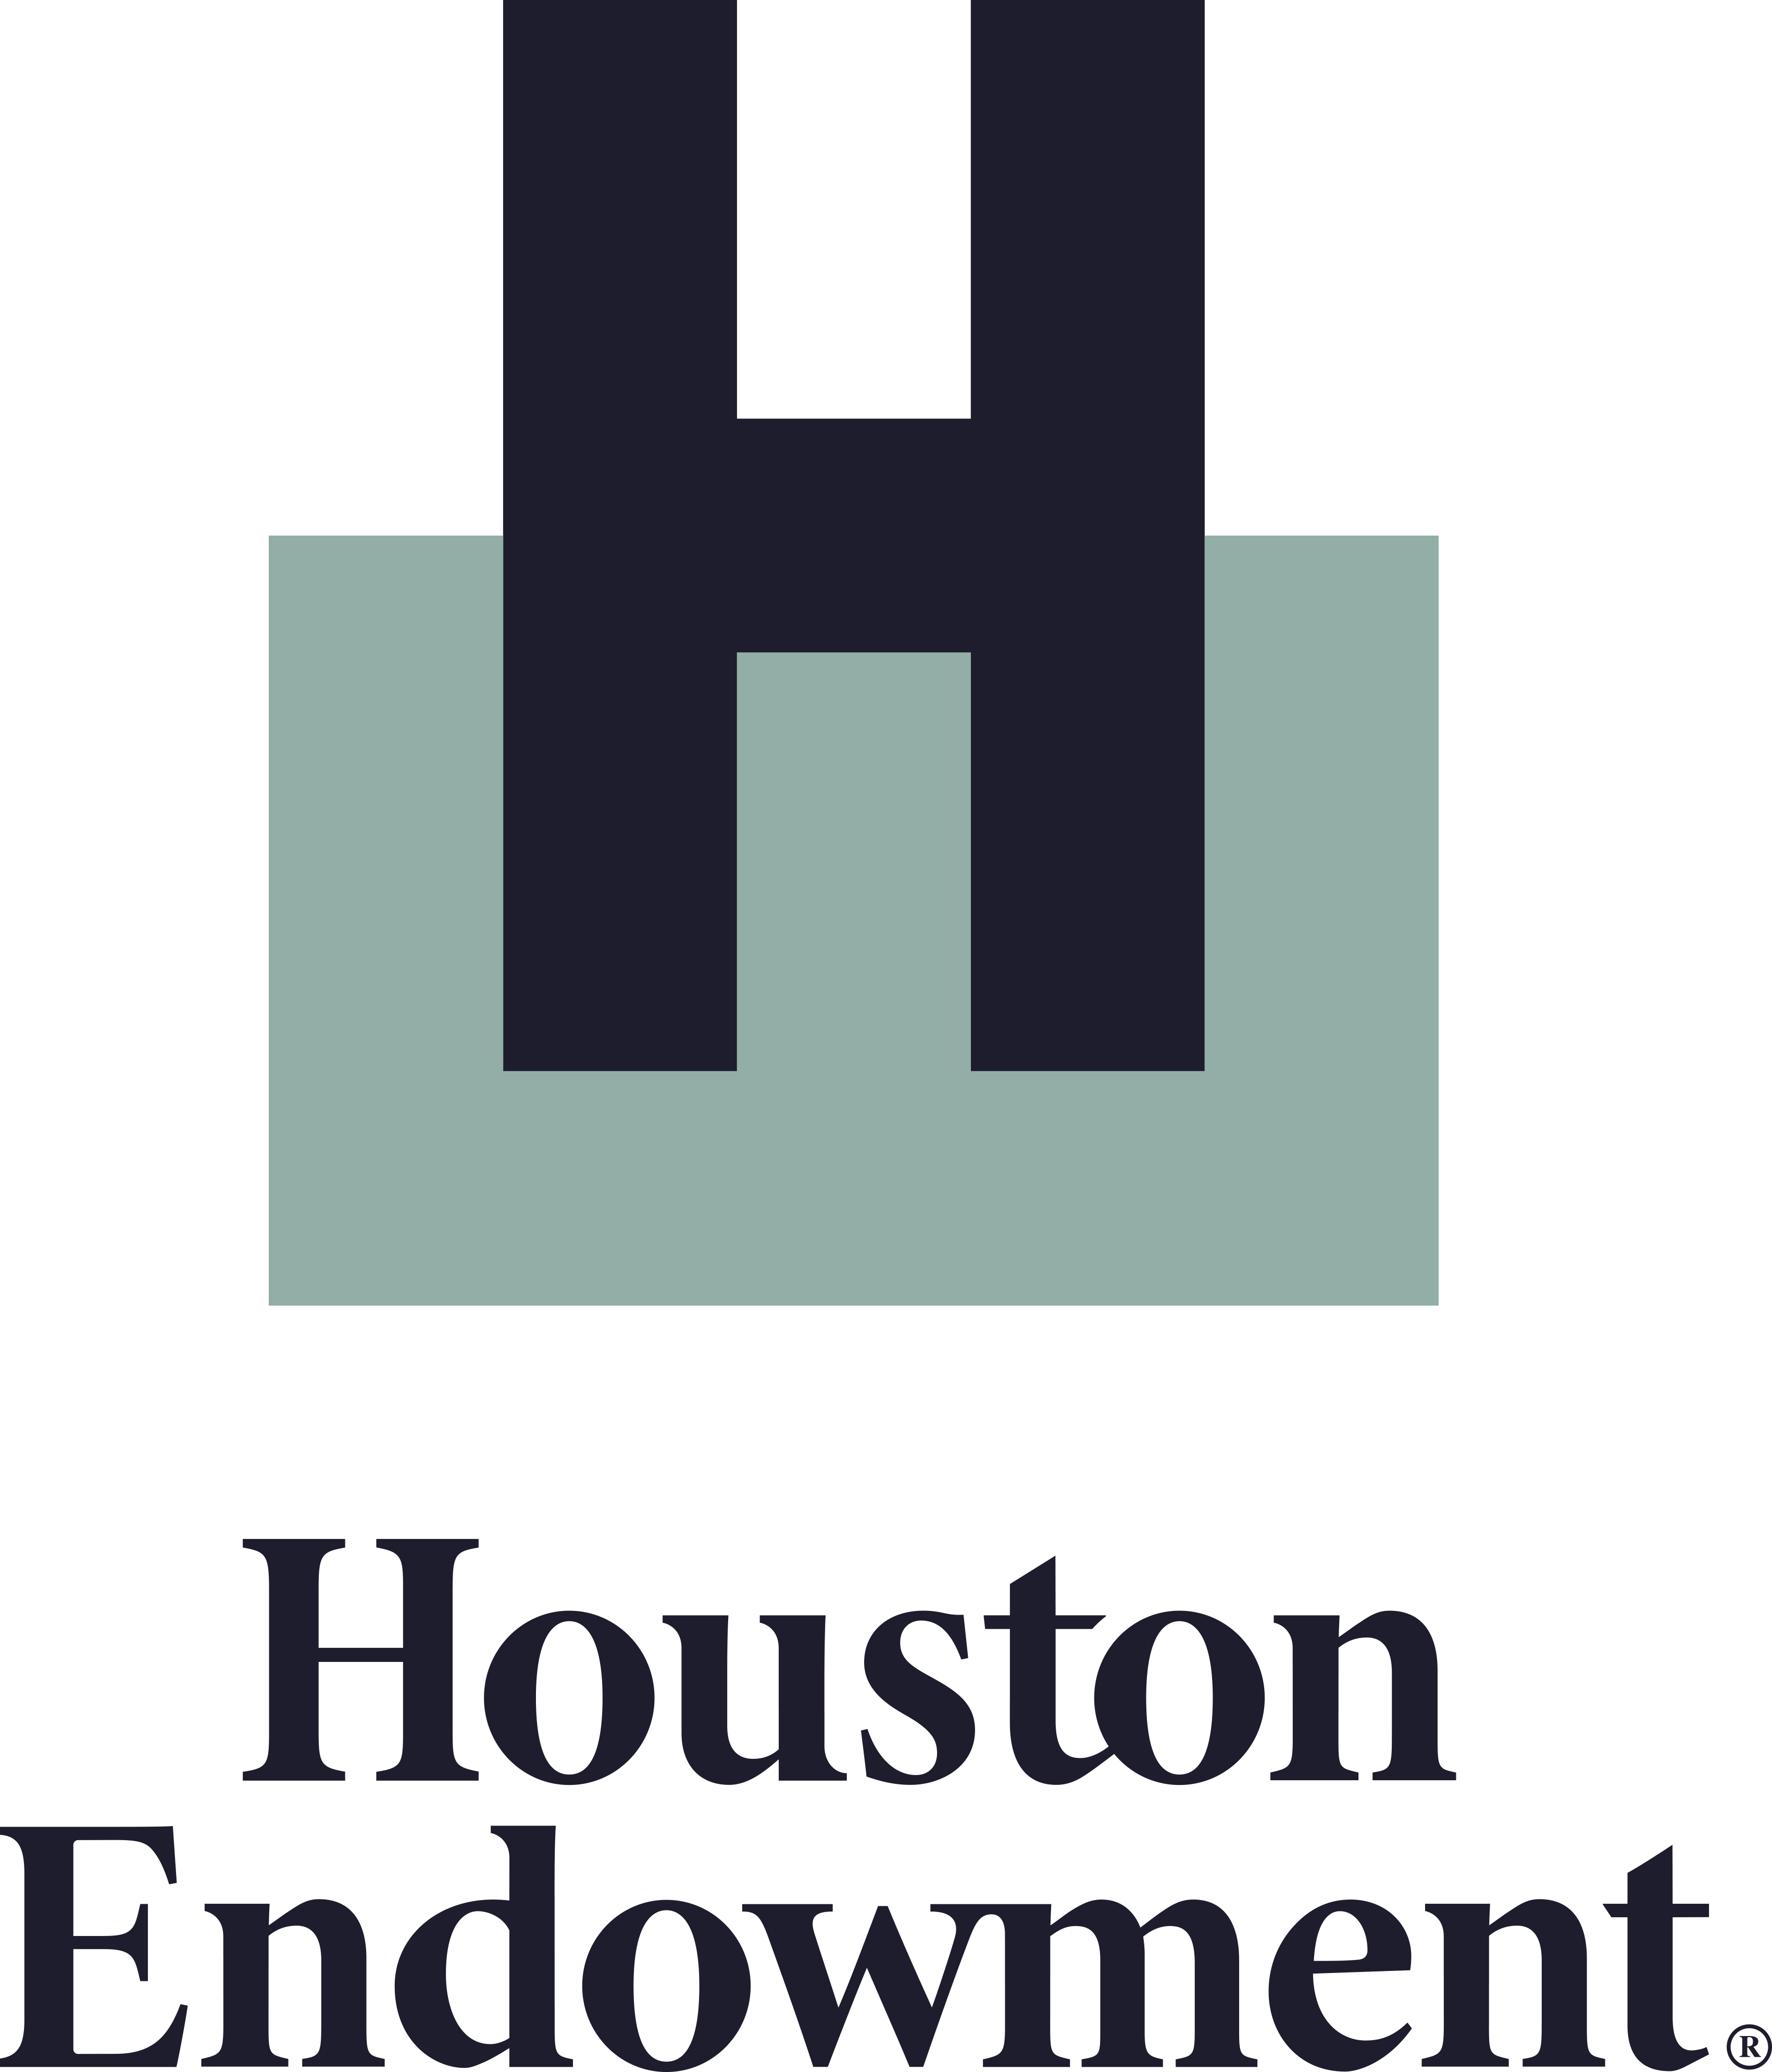 Houston Endowment